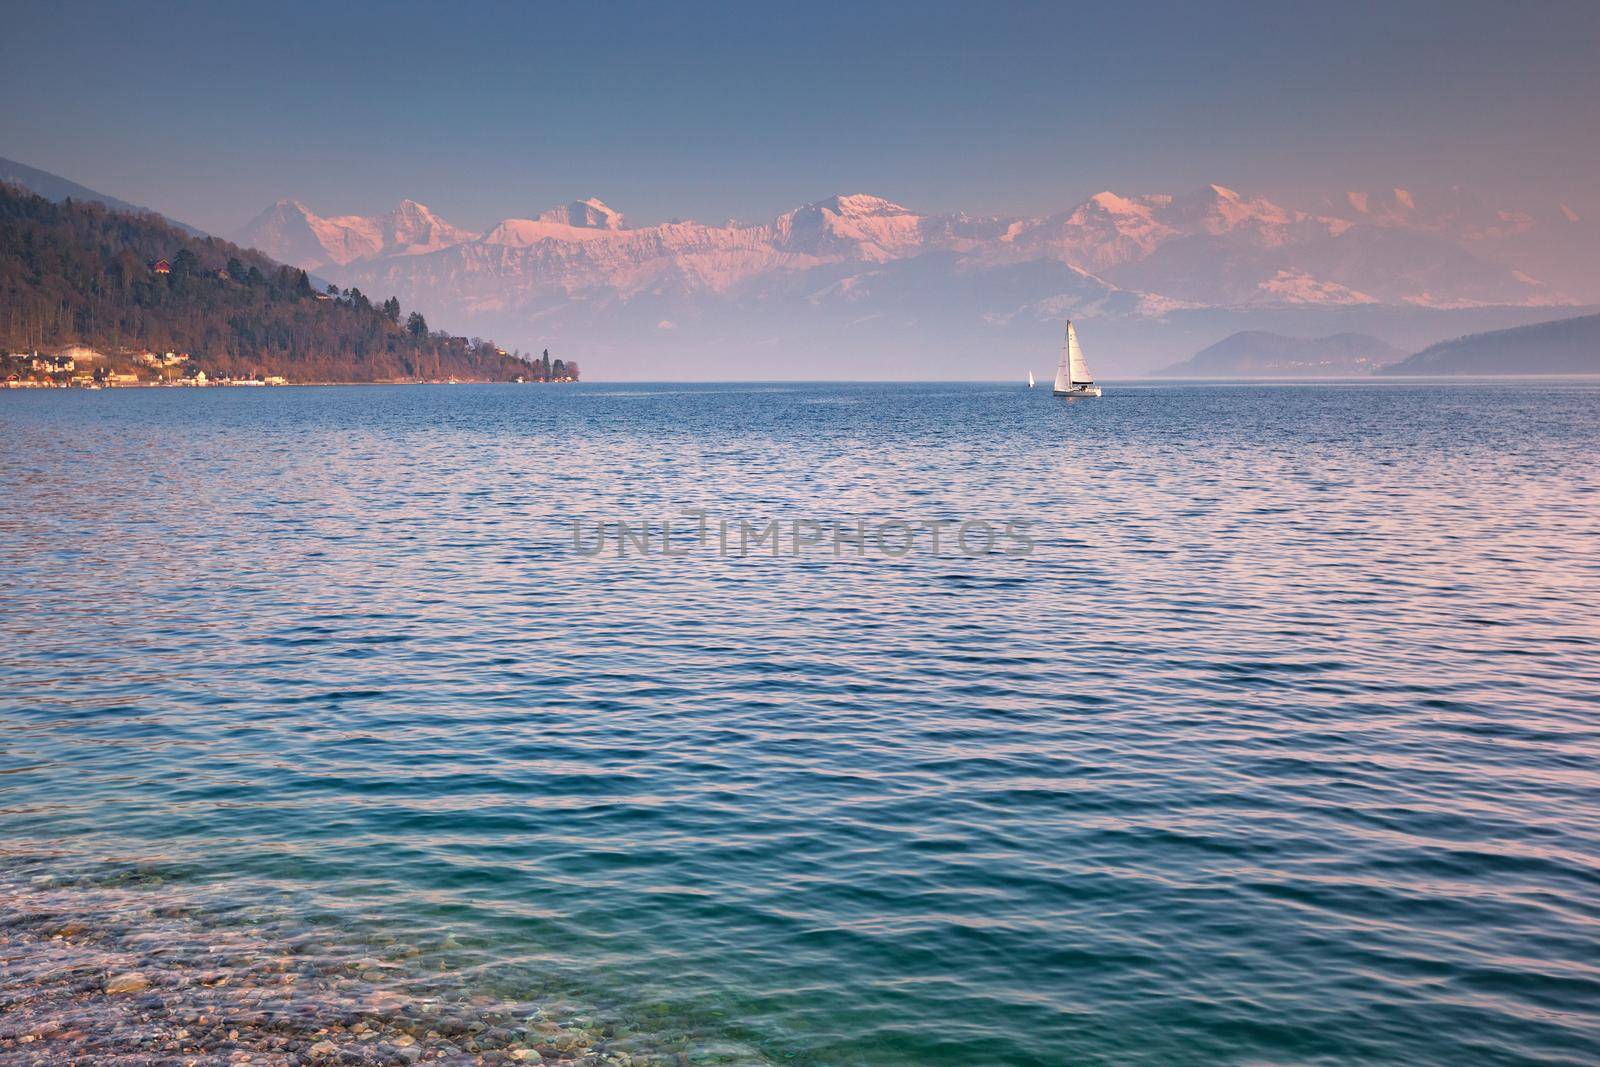 sailing boat on the lake Thun, Bernese Oberland, Switzerland